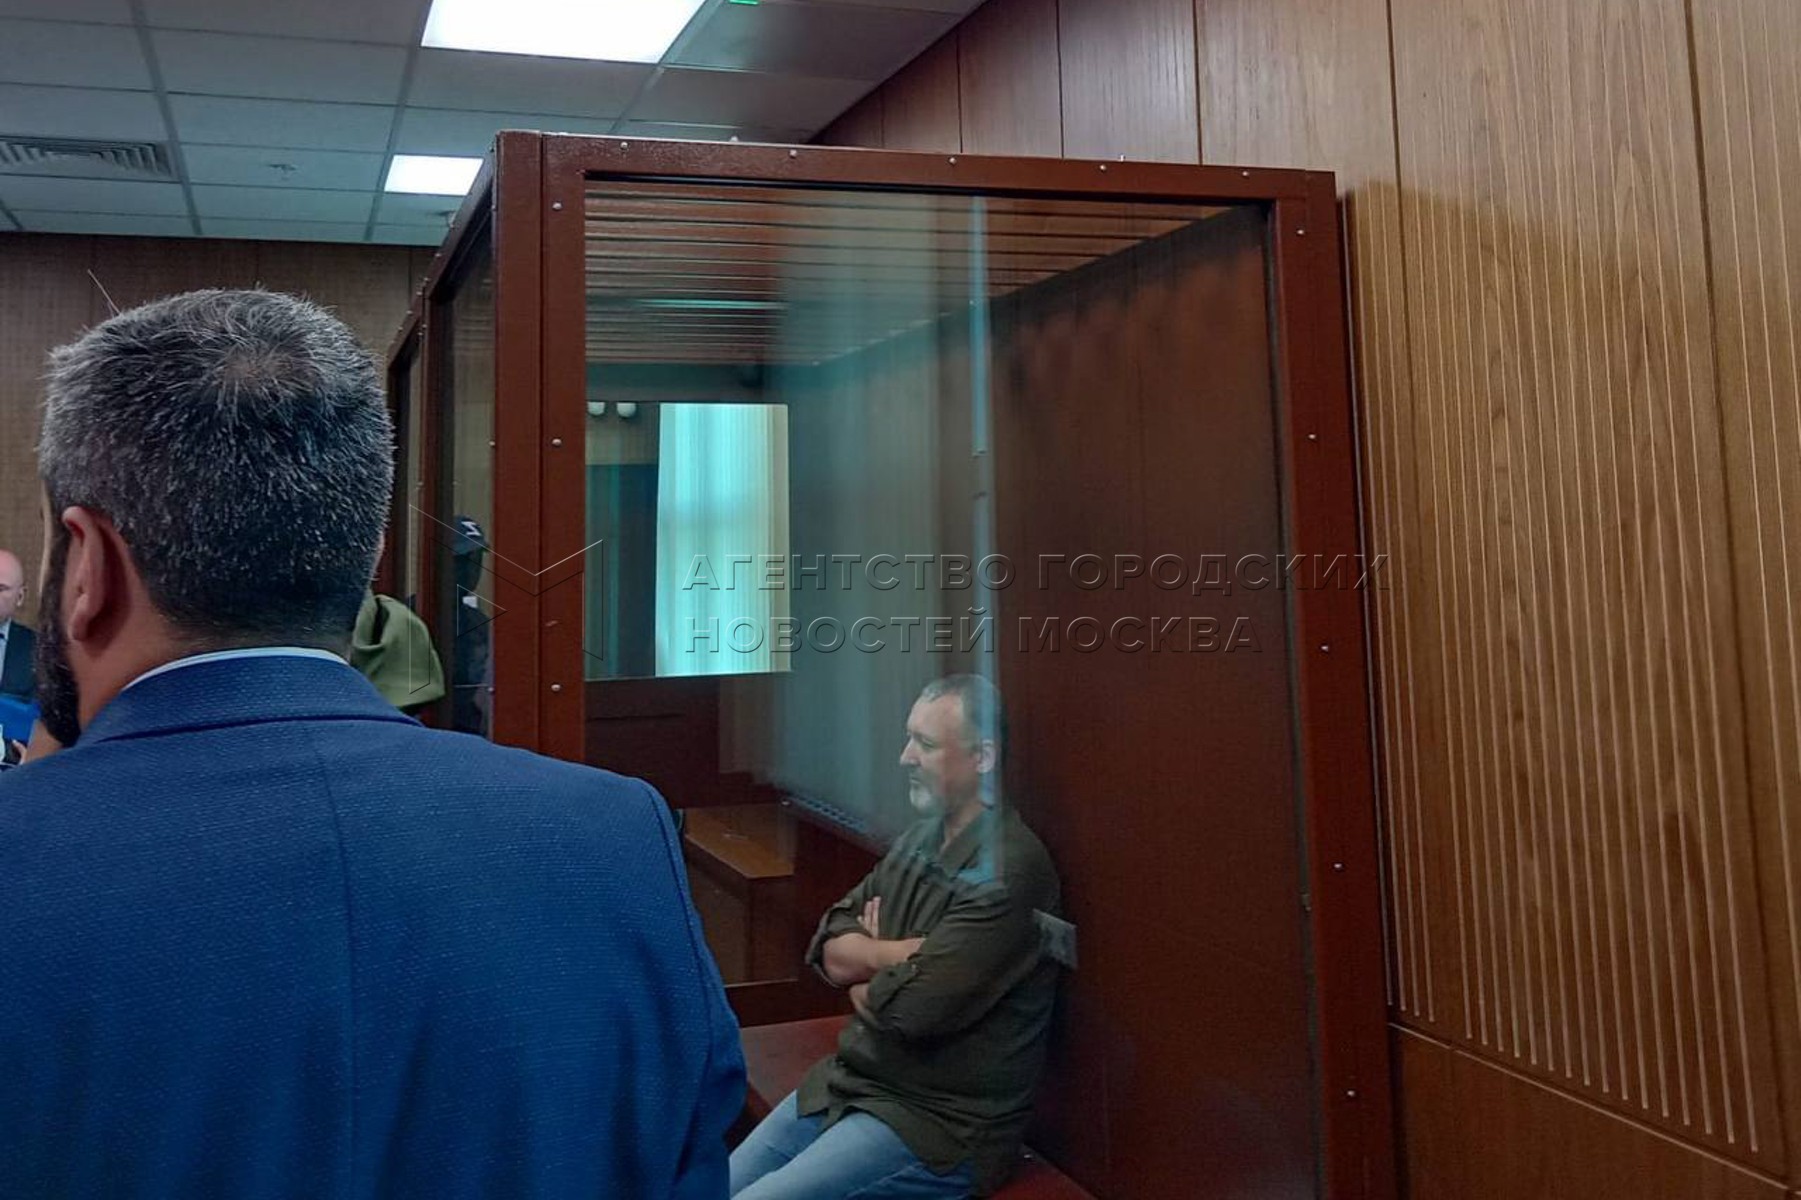 Арест попросить. Заседание суда. Судебное заседание фото. Суд над Навальным.